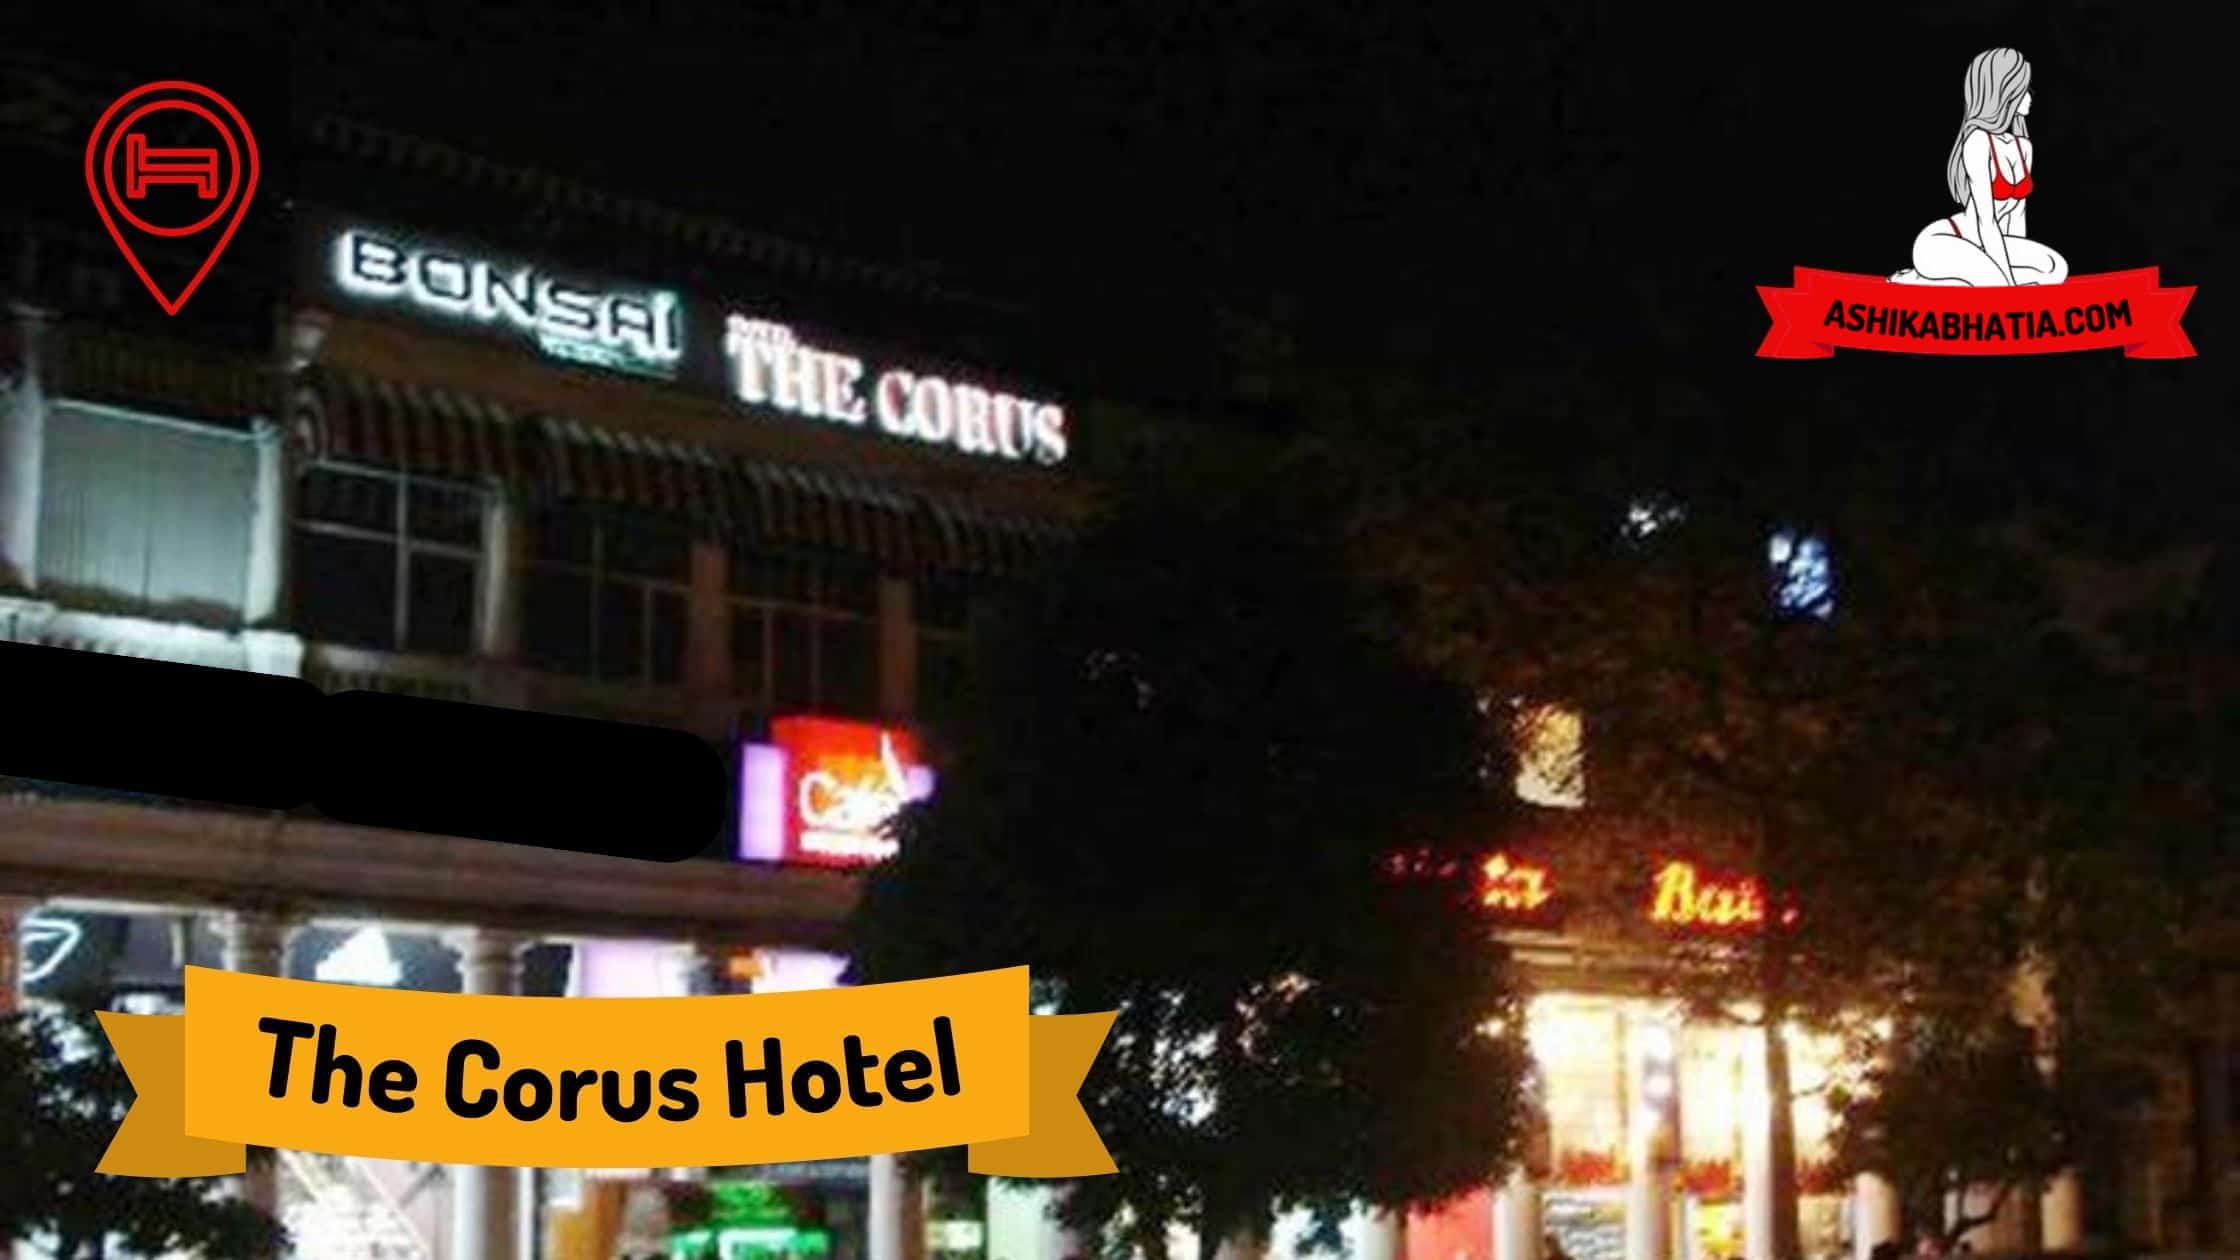 The Corus Hotel Escorts